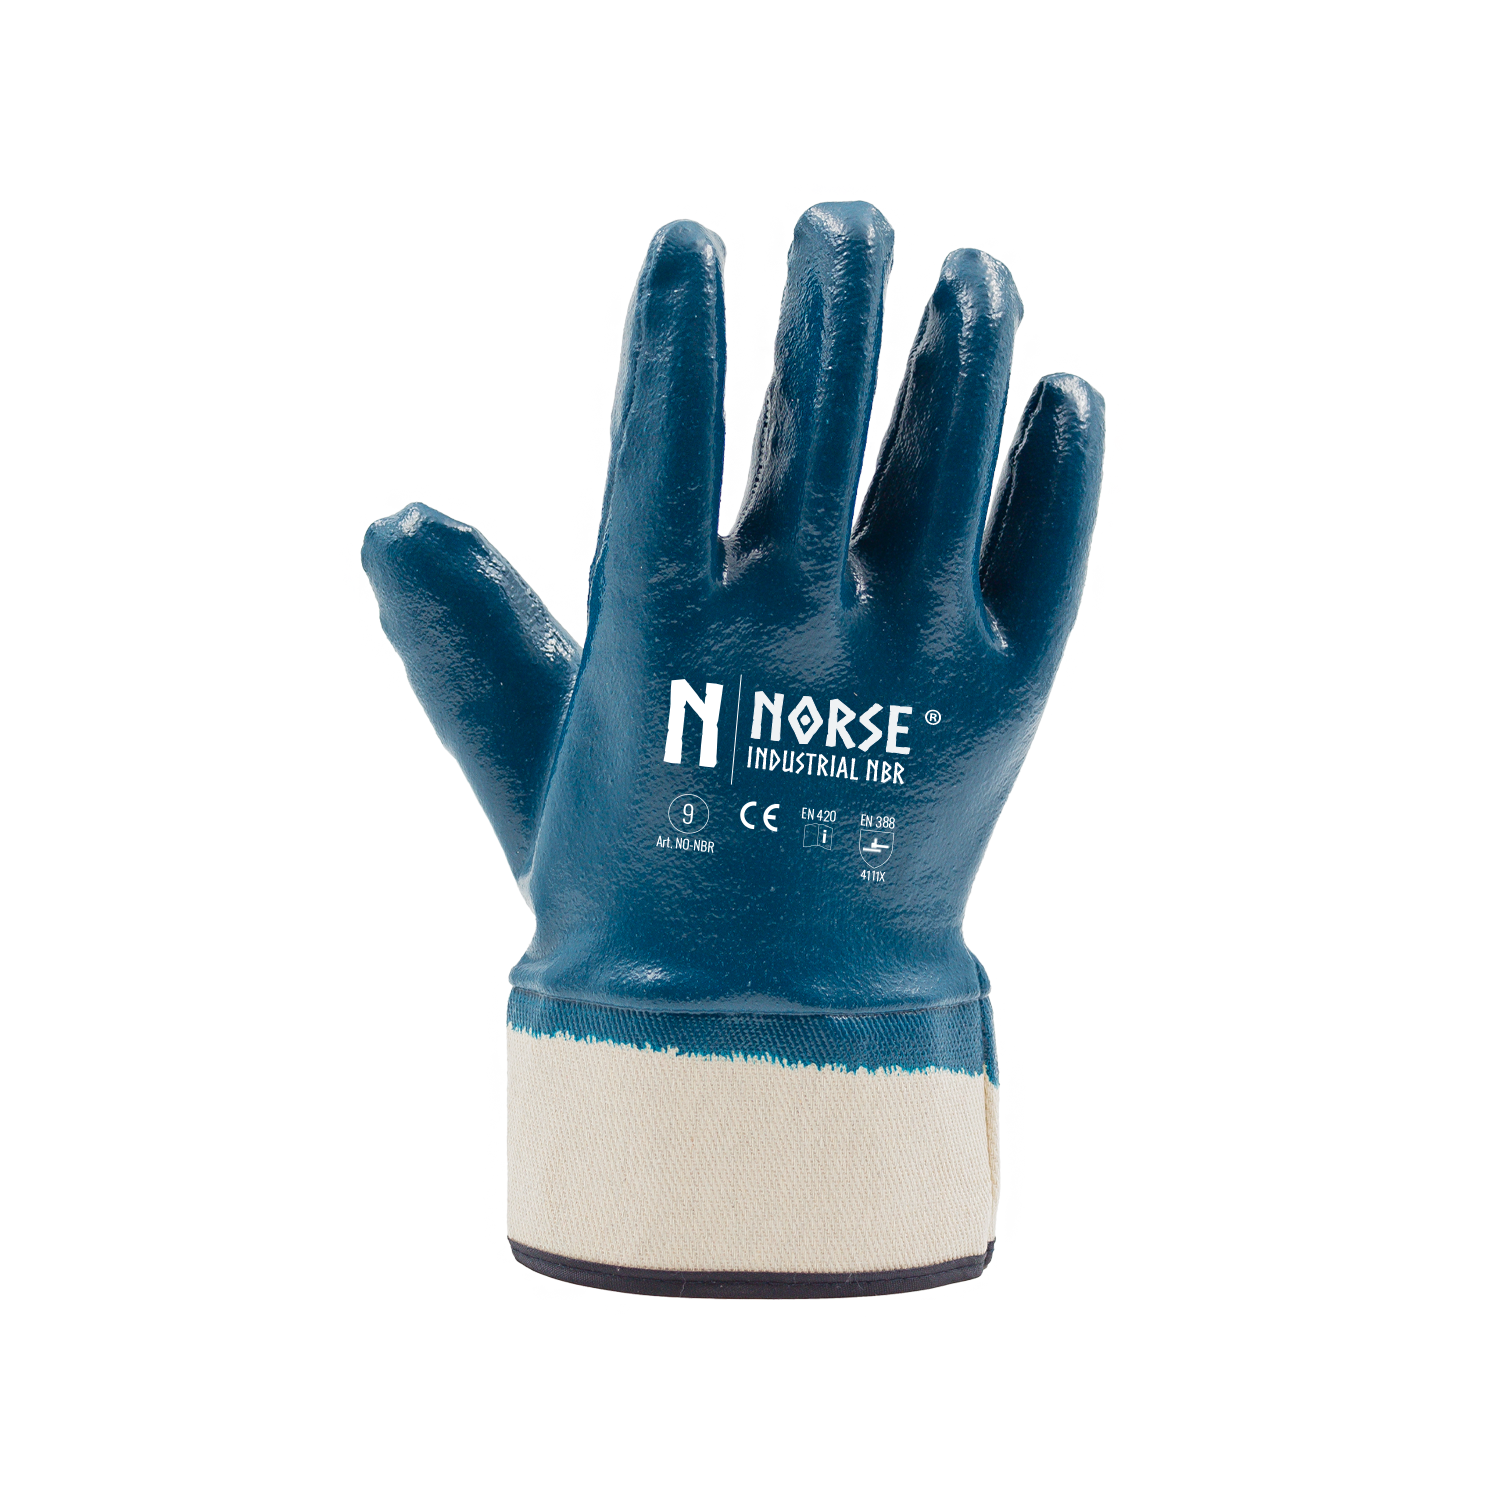 NORSE Industriële NBR Slijtvaste Handschoenen Maat 9